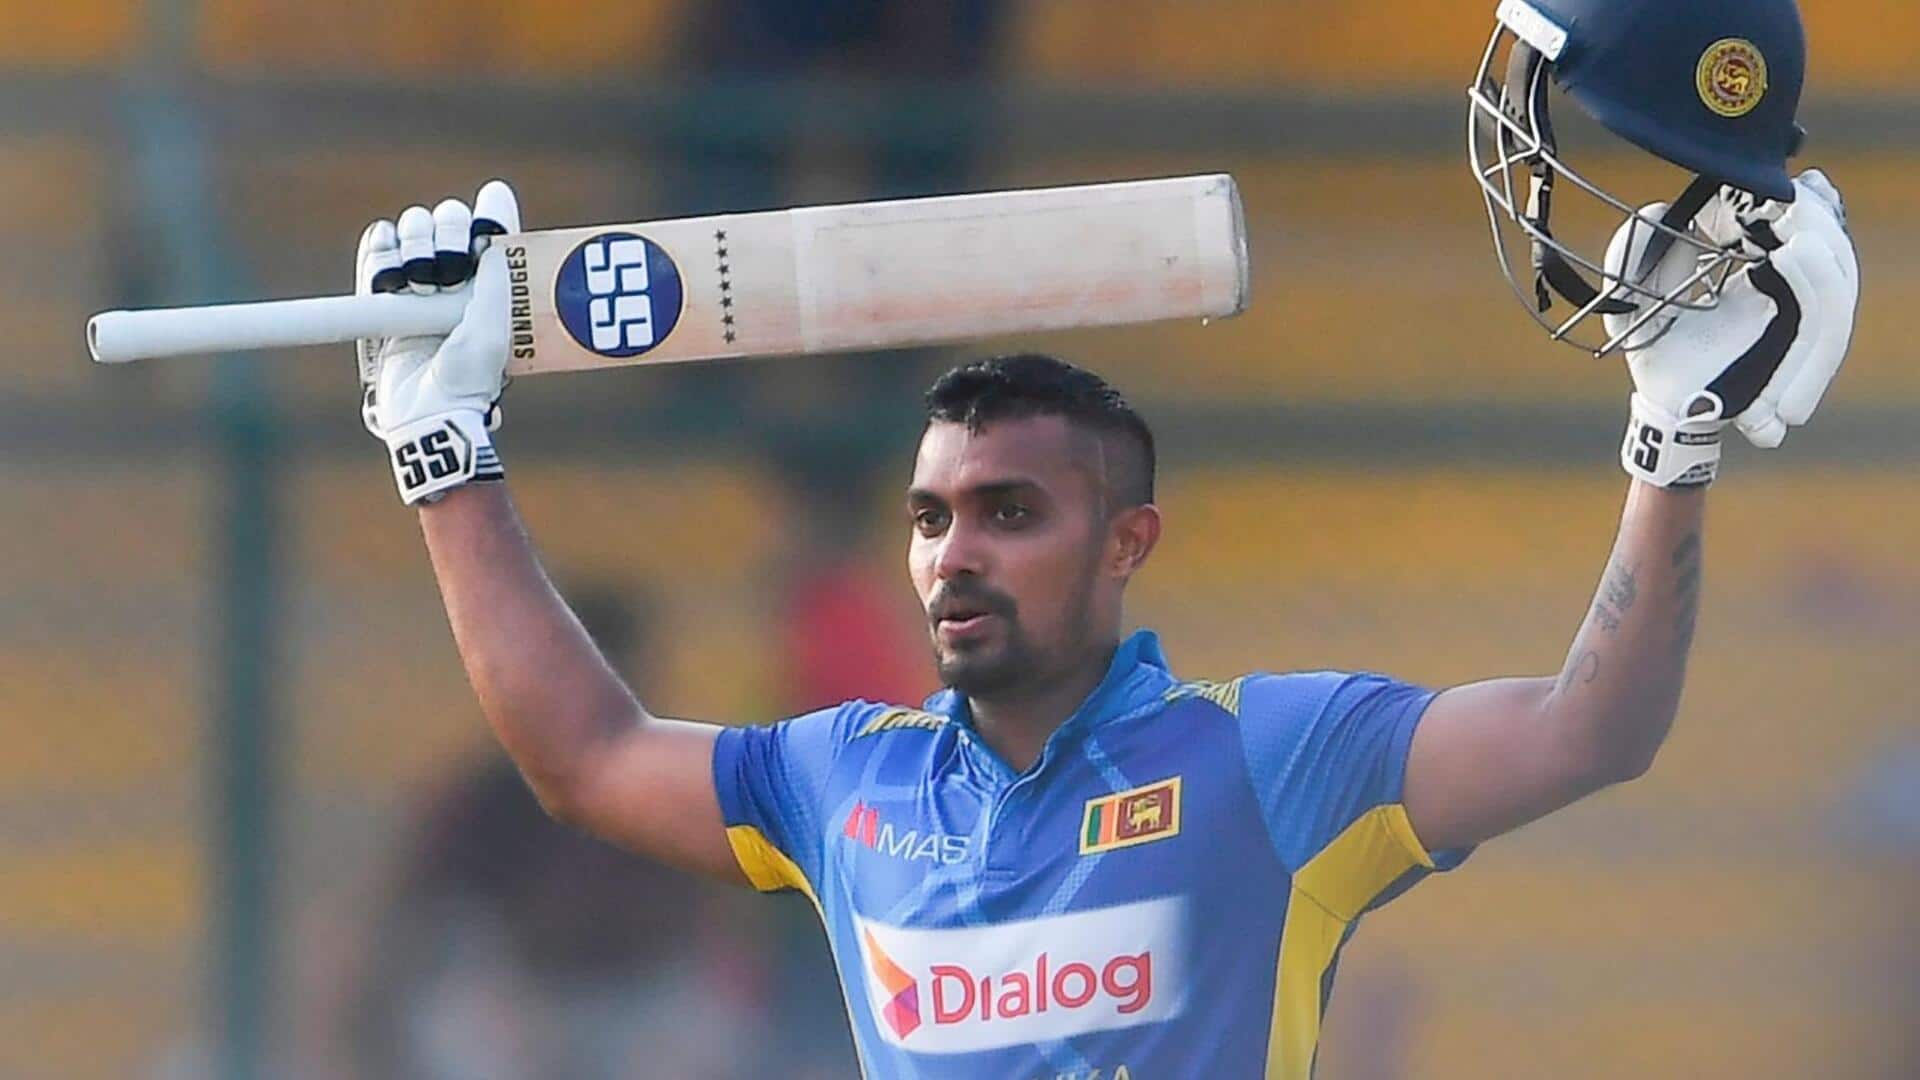 श्रीलंका के दनुष्का गुणाथिलका फिर से अंतरराष्ट्रीय क्रिकेट में खेल सकेंगे, बोर्ड हटाएगा प्रतिबंध